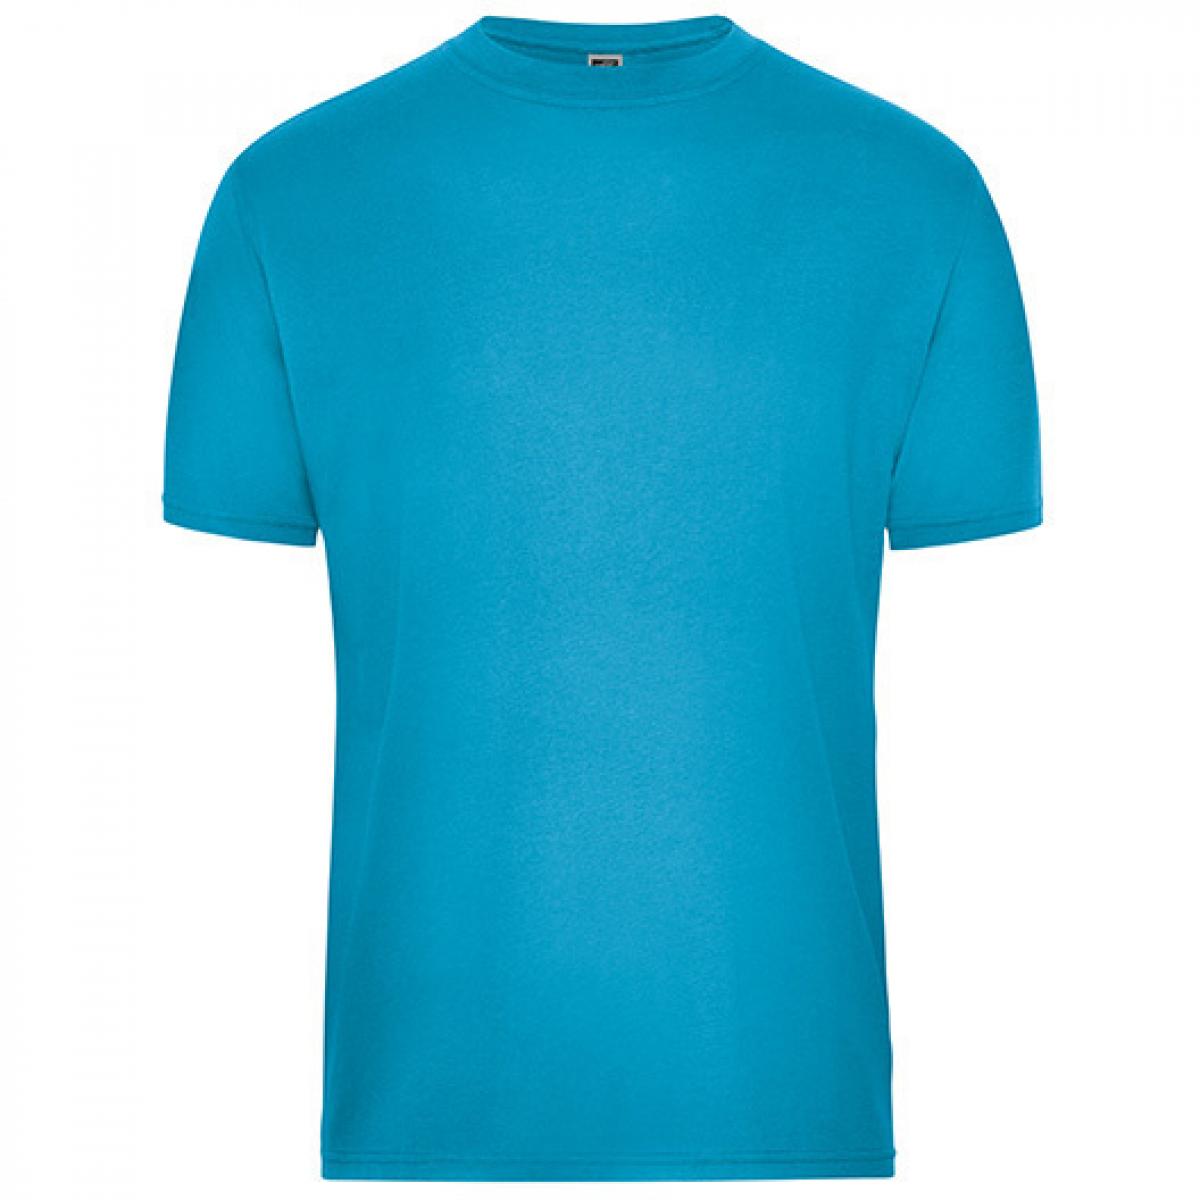 Hersteller: James+Nicholson Herstellernummer: JN1808 Artikelbezeichnung: Men‘s BIO Workwear T-Shirt, Waschbar bis 60 °C Farbe: Turquoise